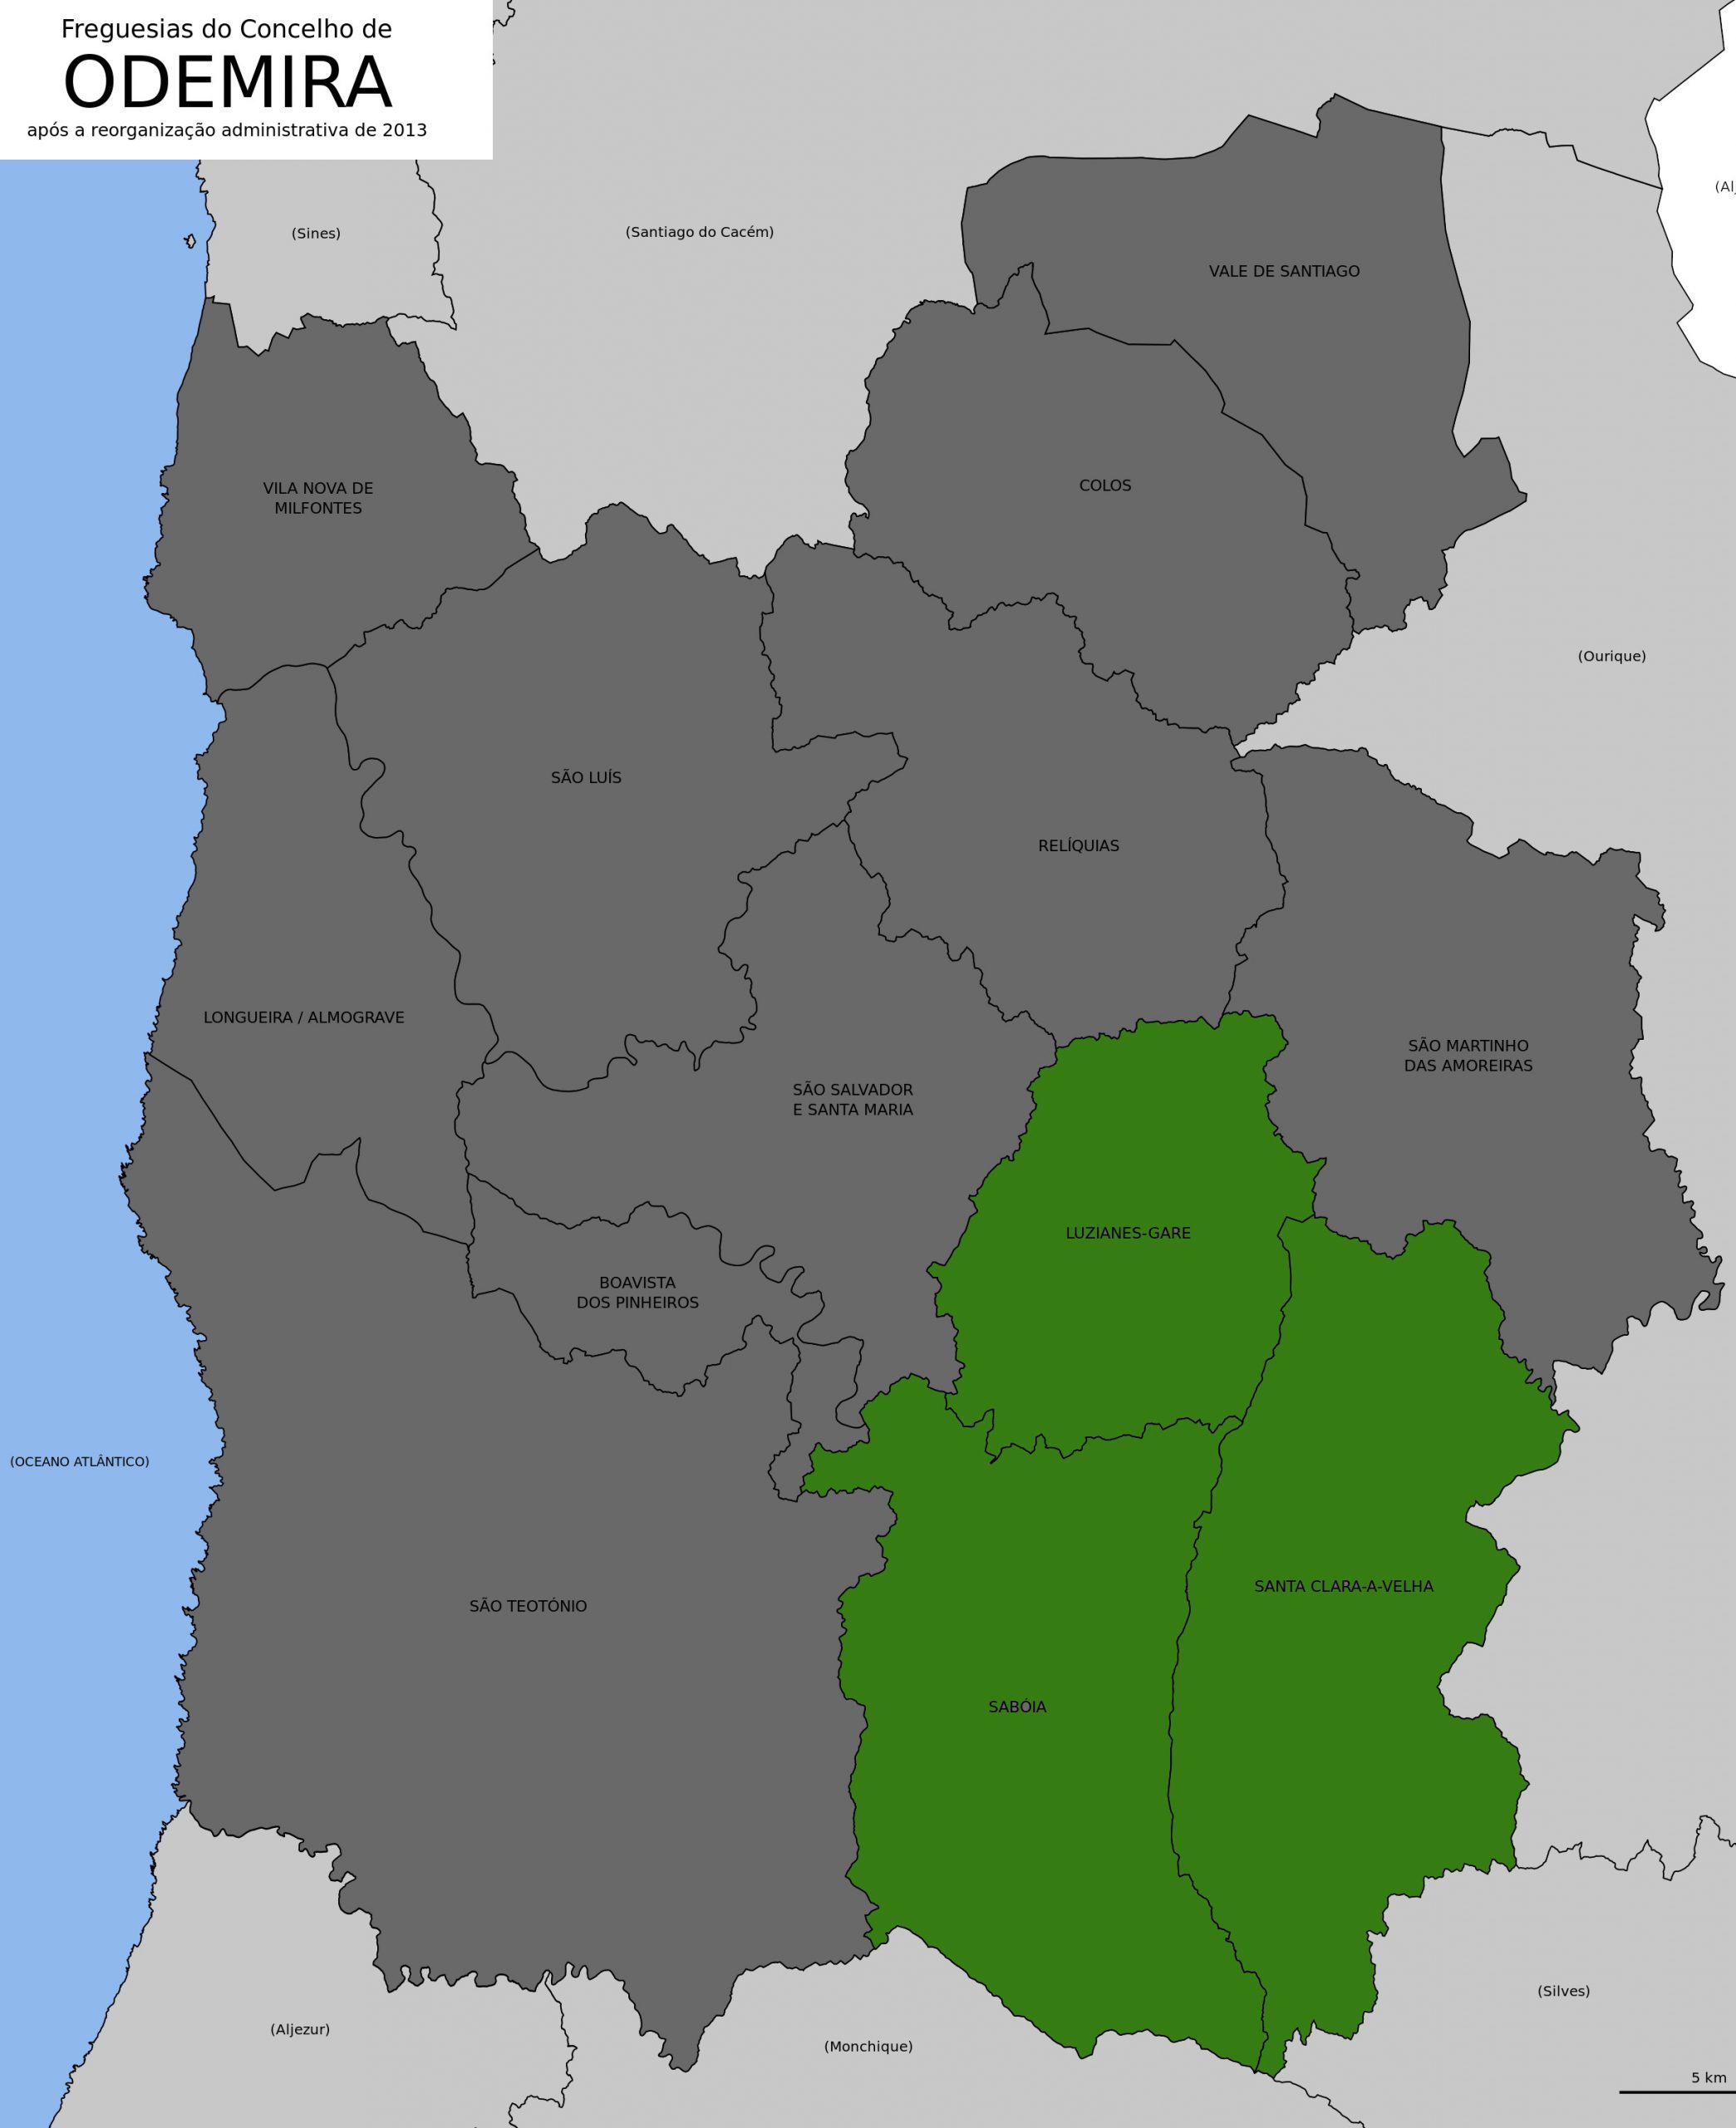 Mapa do concelho de Odemira - divisão por freguesias